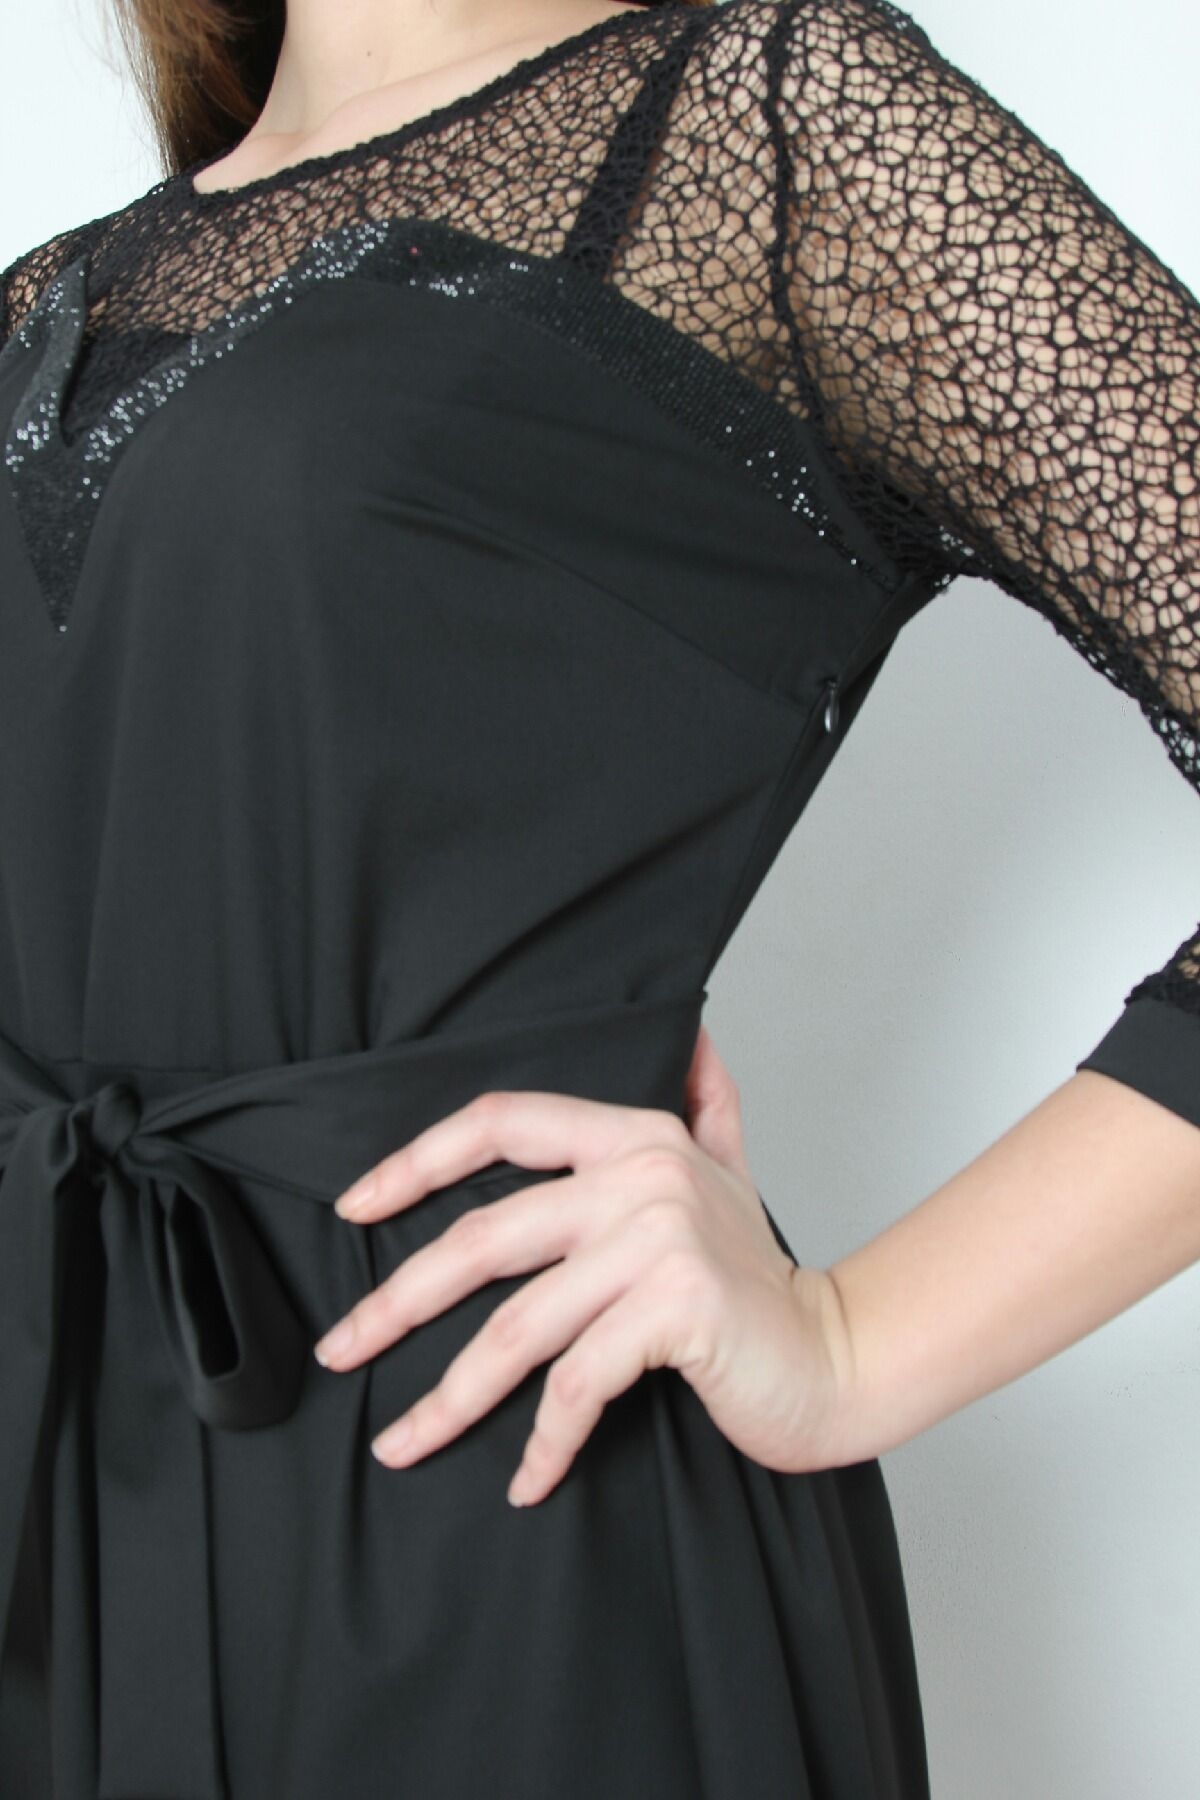 Жаккардовое платье с расклешенной юбкой, кружевом и бантом на талии